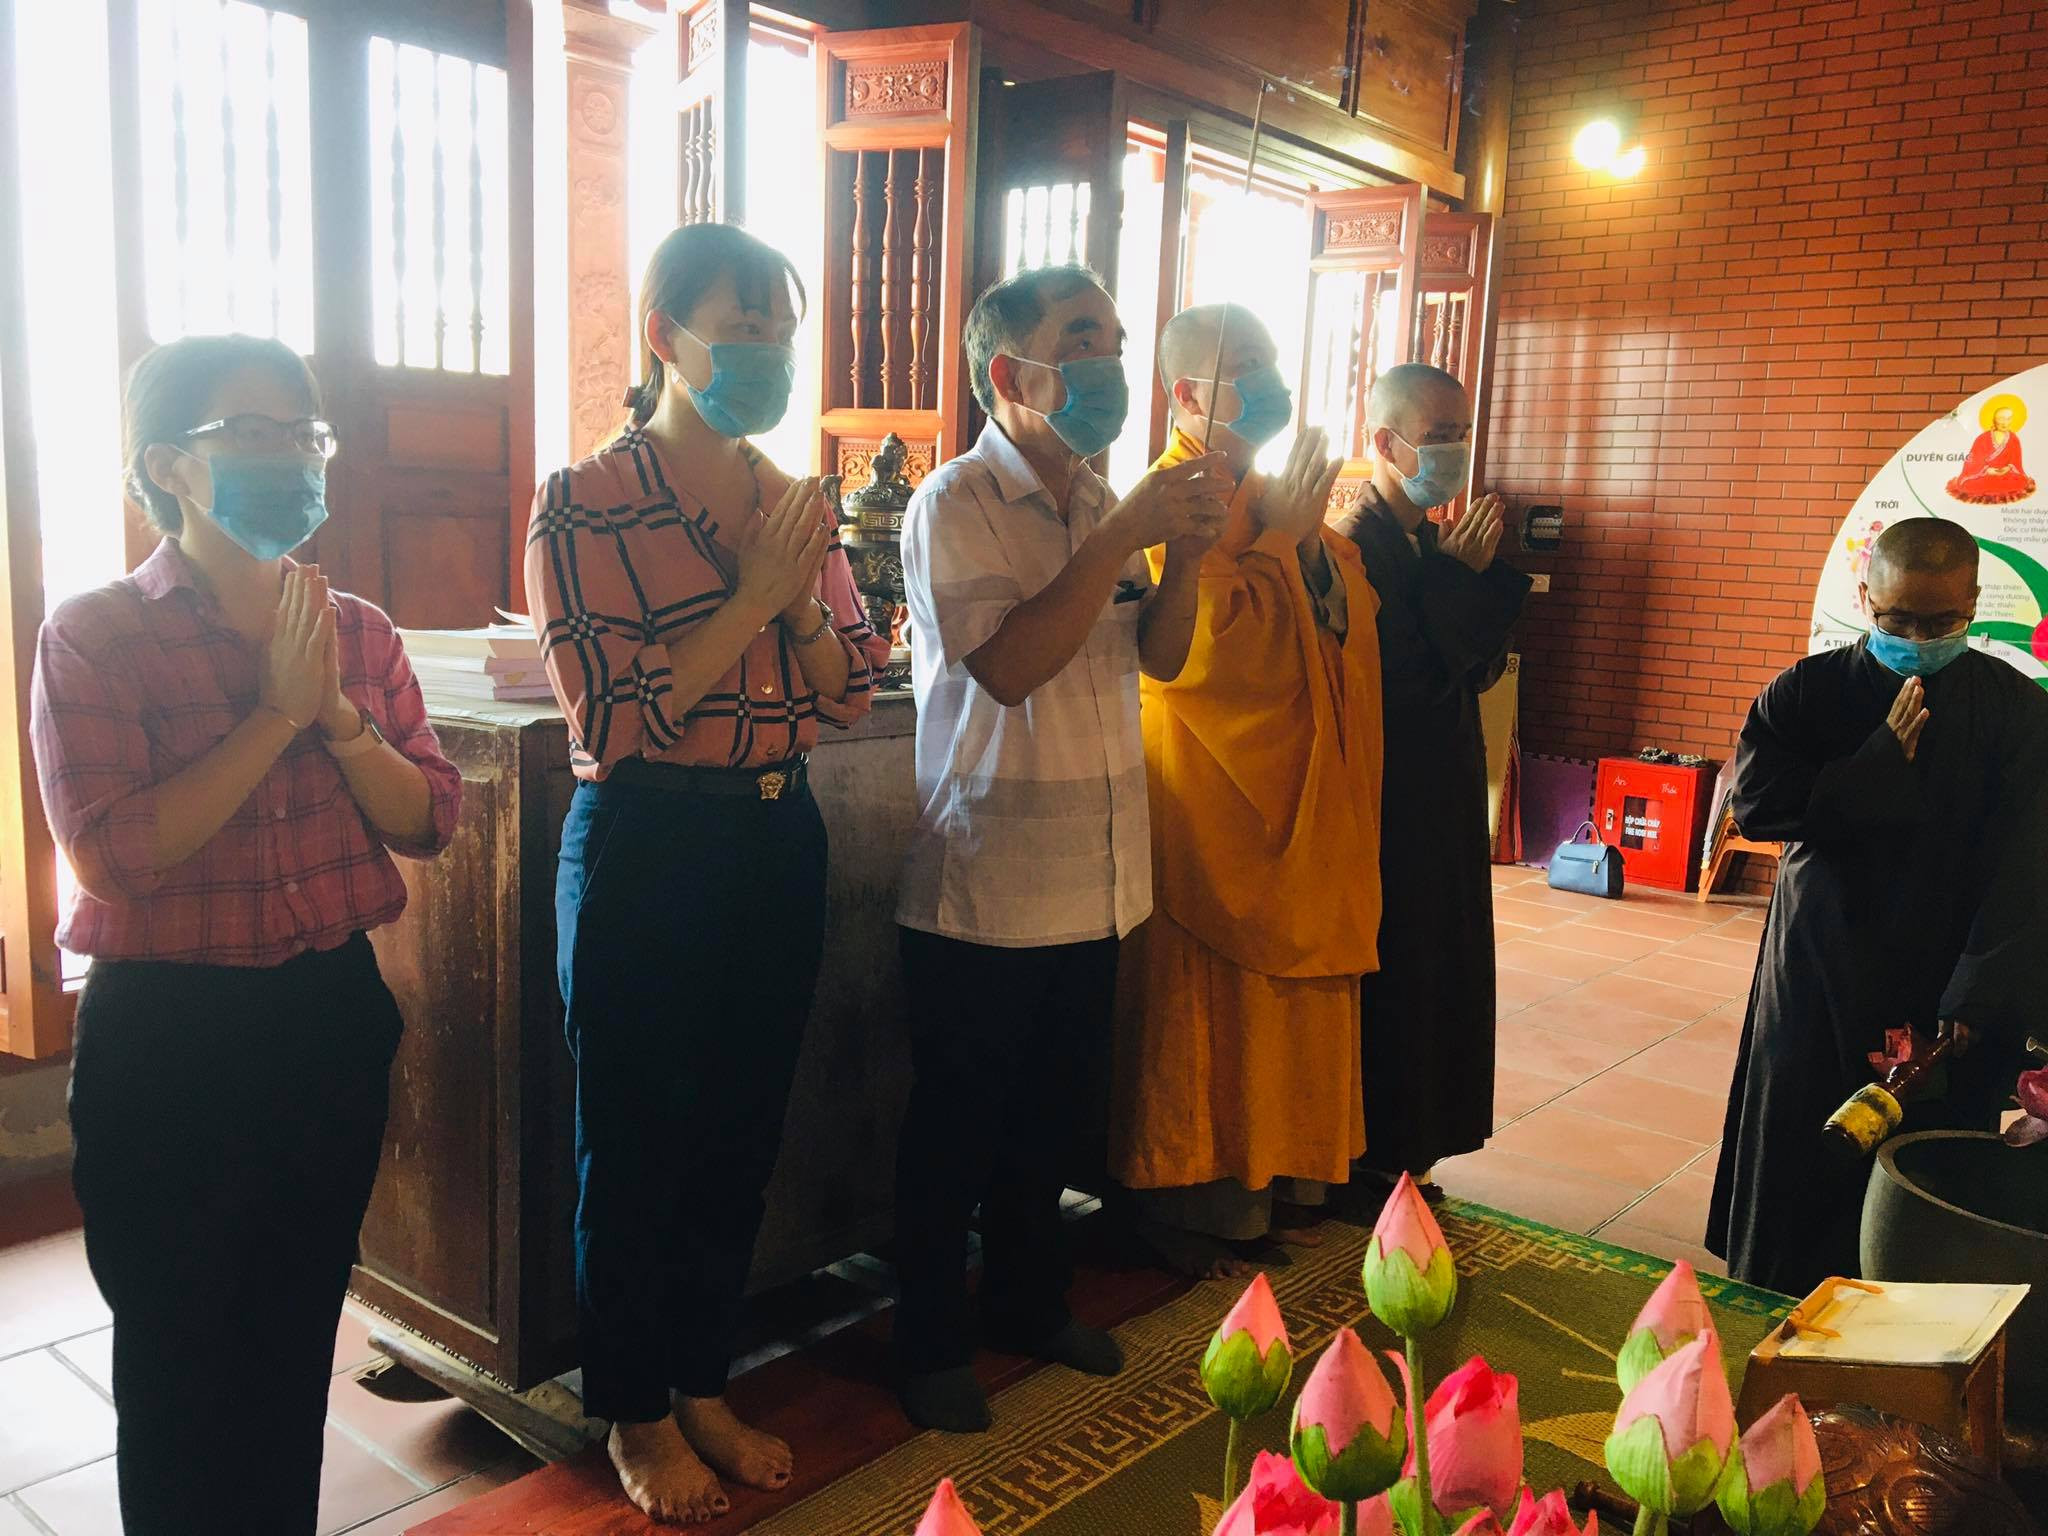 Đoàn Công tác Ban Tôn giáo – Sở Nội vụ chúc mừng Phật đản và dâng hương lễ Phật tại chùa An Thái, trụ sở Ban Trị sự GHPGVN huyện Quỳnh Lưu. Ảnh: Hữu Tình